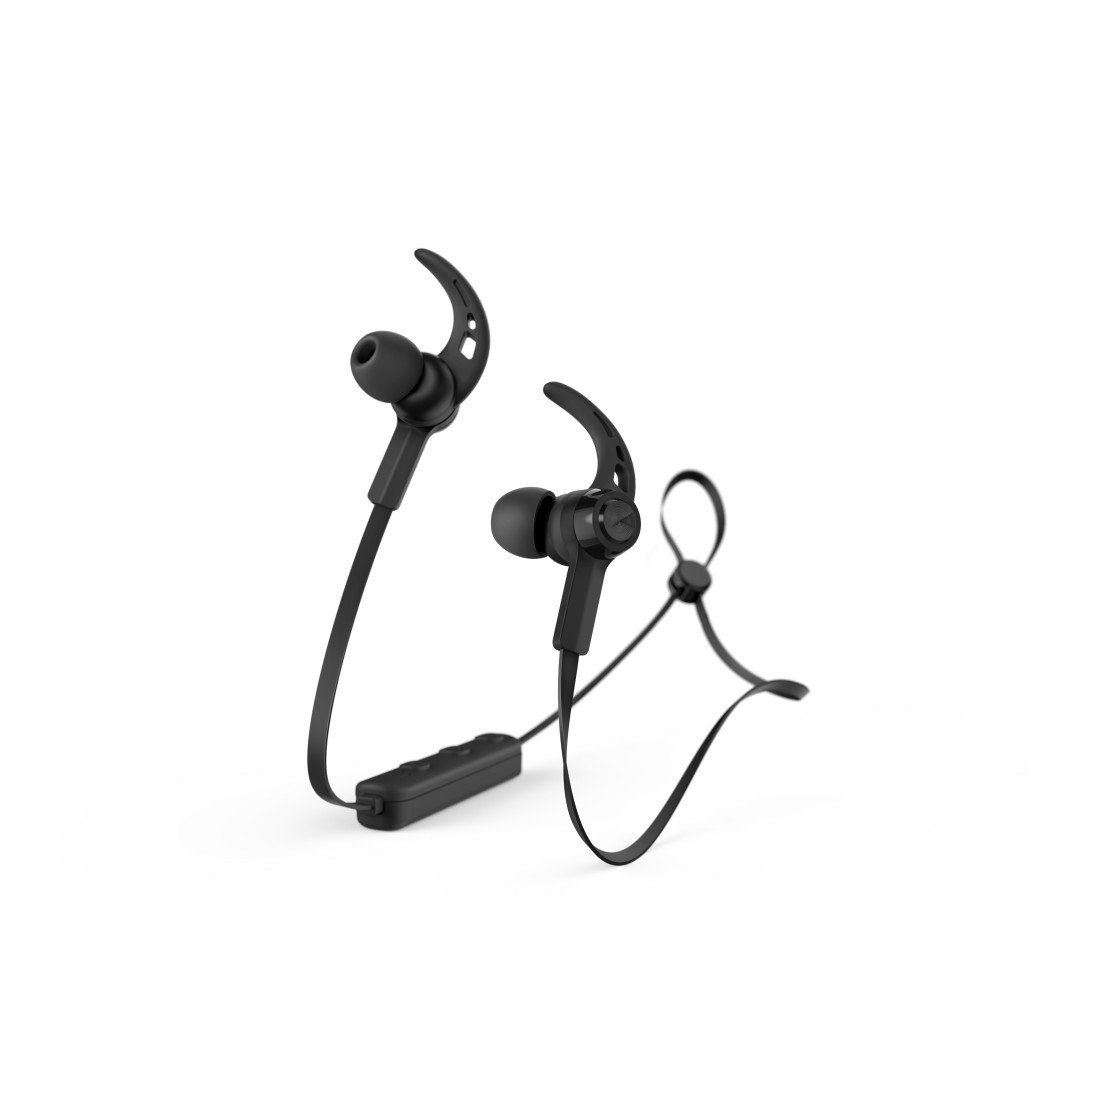 Hama Sport Bluetooth®-Kopfhörer HFP, Assistant, In Reichweite A2DP Bluetooth, Bluetooth-Kopfhörer Sprachassistenten, Siri, Sprachsteuerung, Ear, AVRCP und 5.0 Bluetooth, Schwarz, (Freisprechfunktion, Lautstärkeregler Rufannahmetaste) Mikrofon, 10m Google